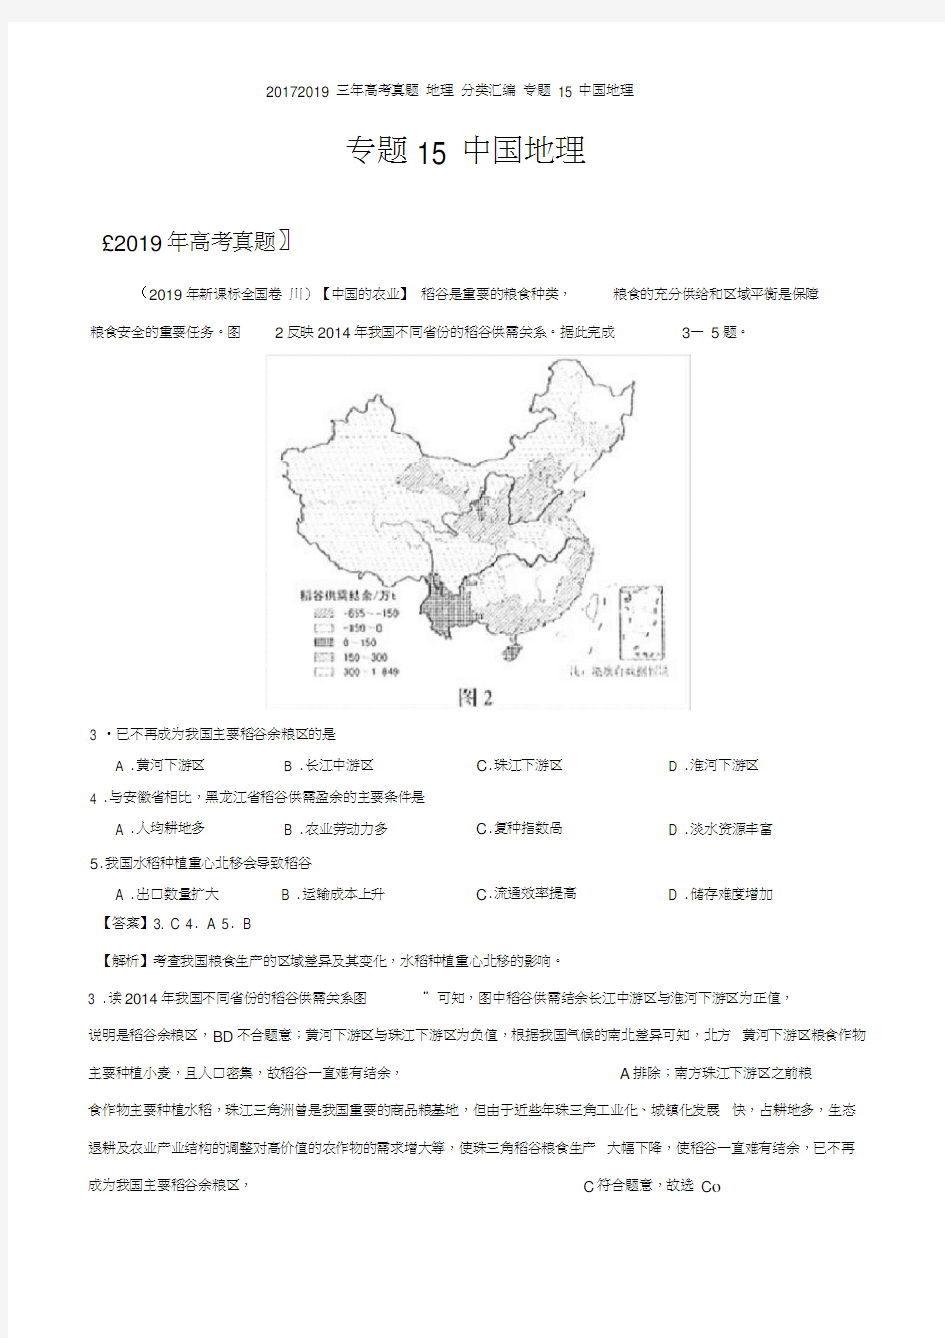 三年高考真题地理分类汇编专题中国地理